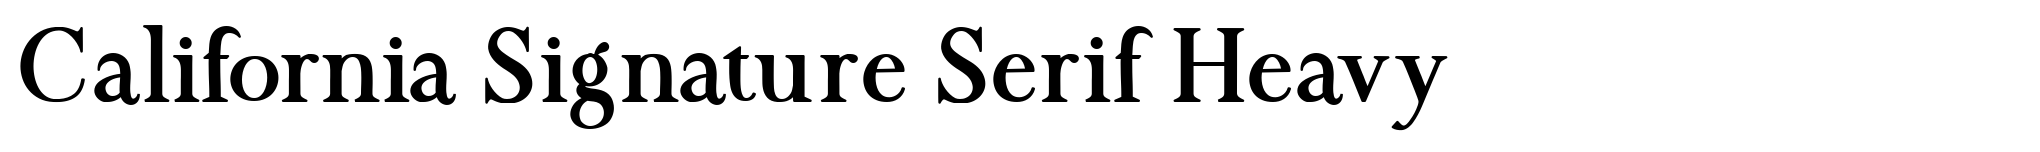 California Signature Serif Heavy image